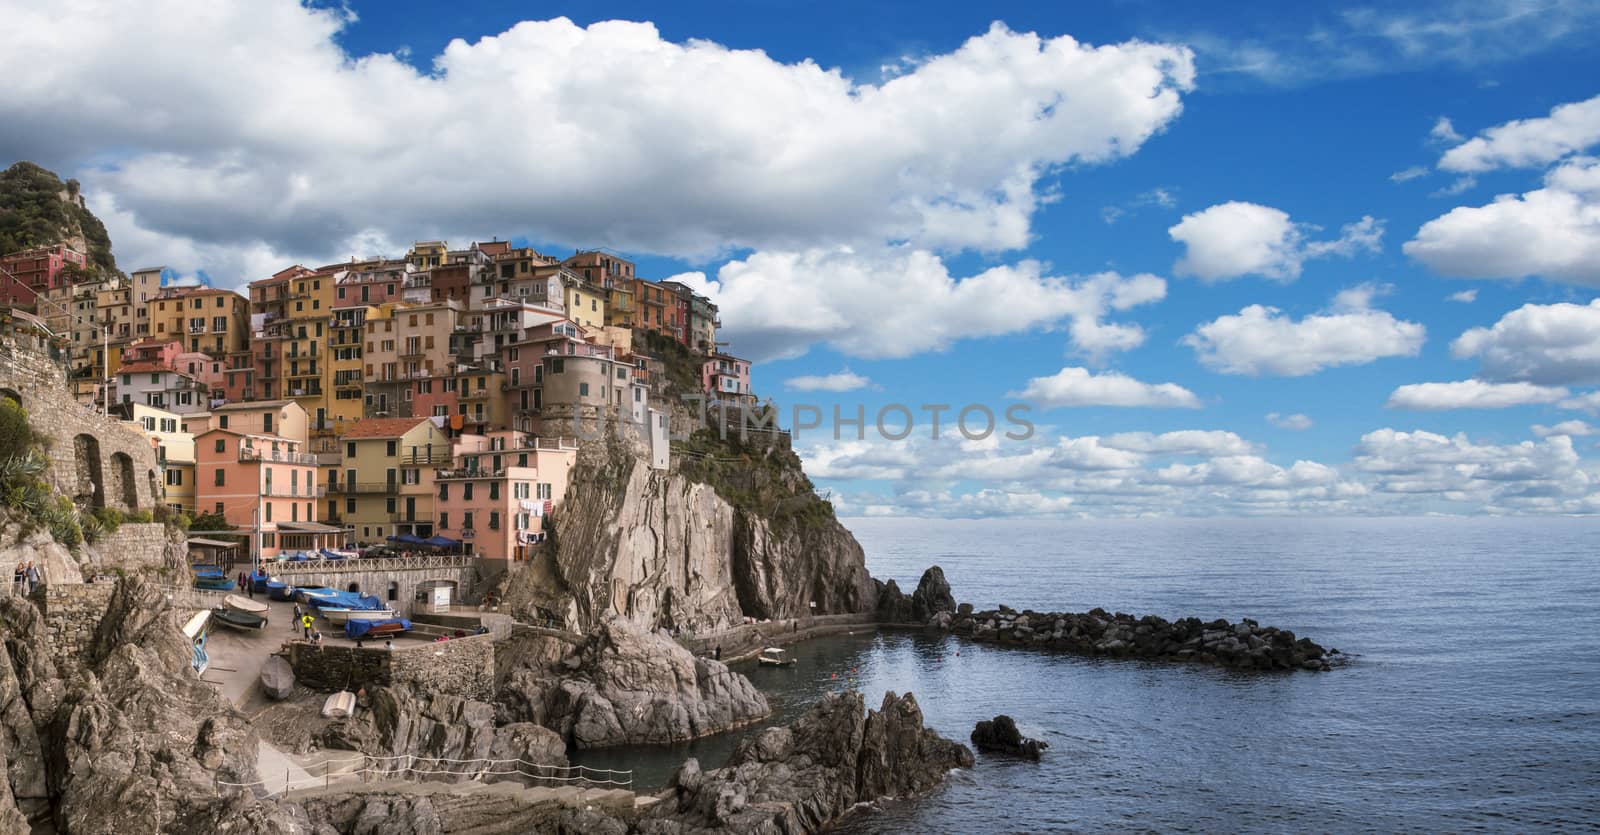 Village of Monterosso al Mare, Cinque Terre, Italy